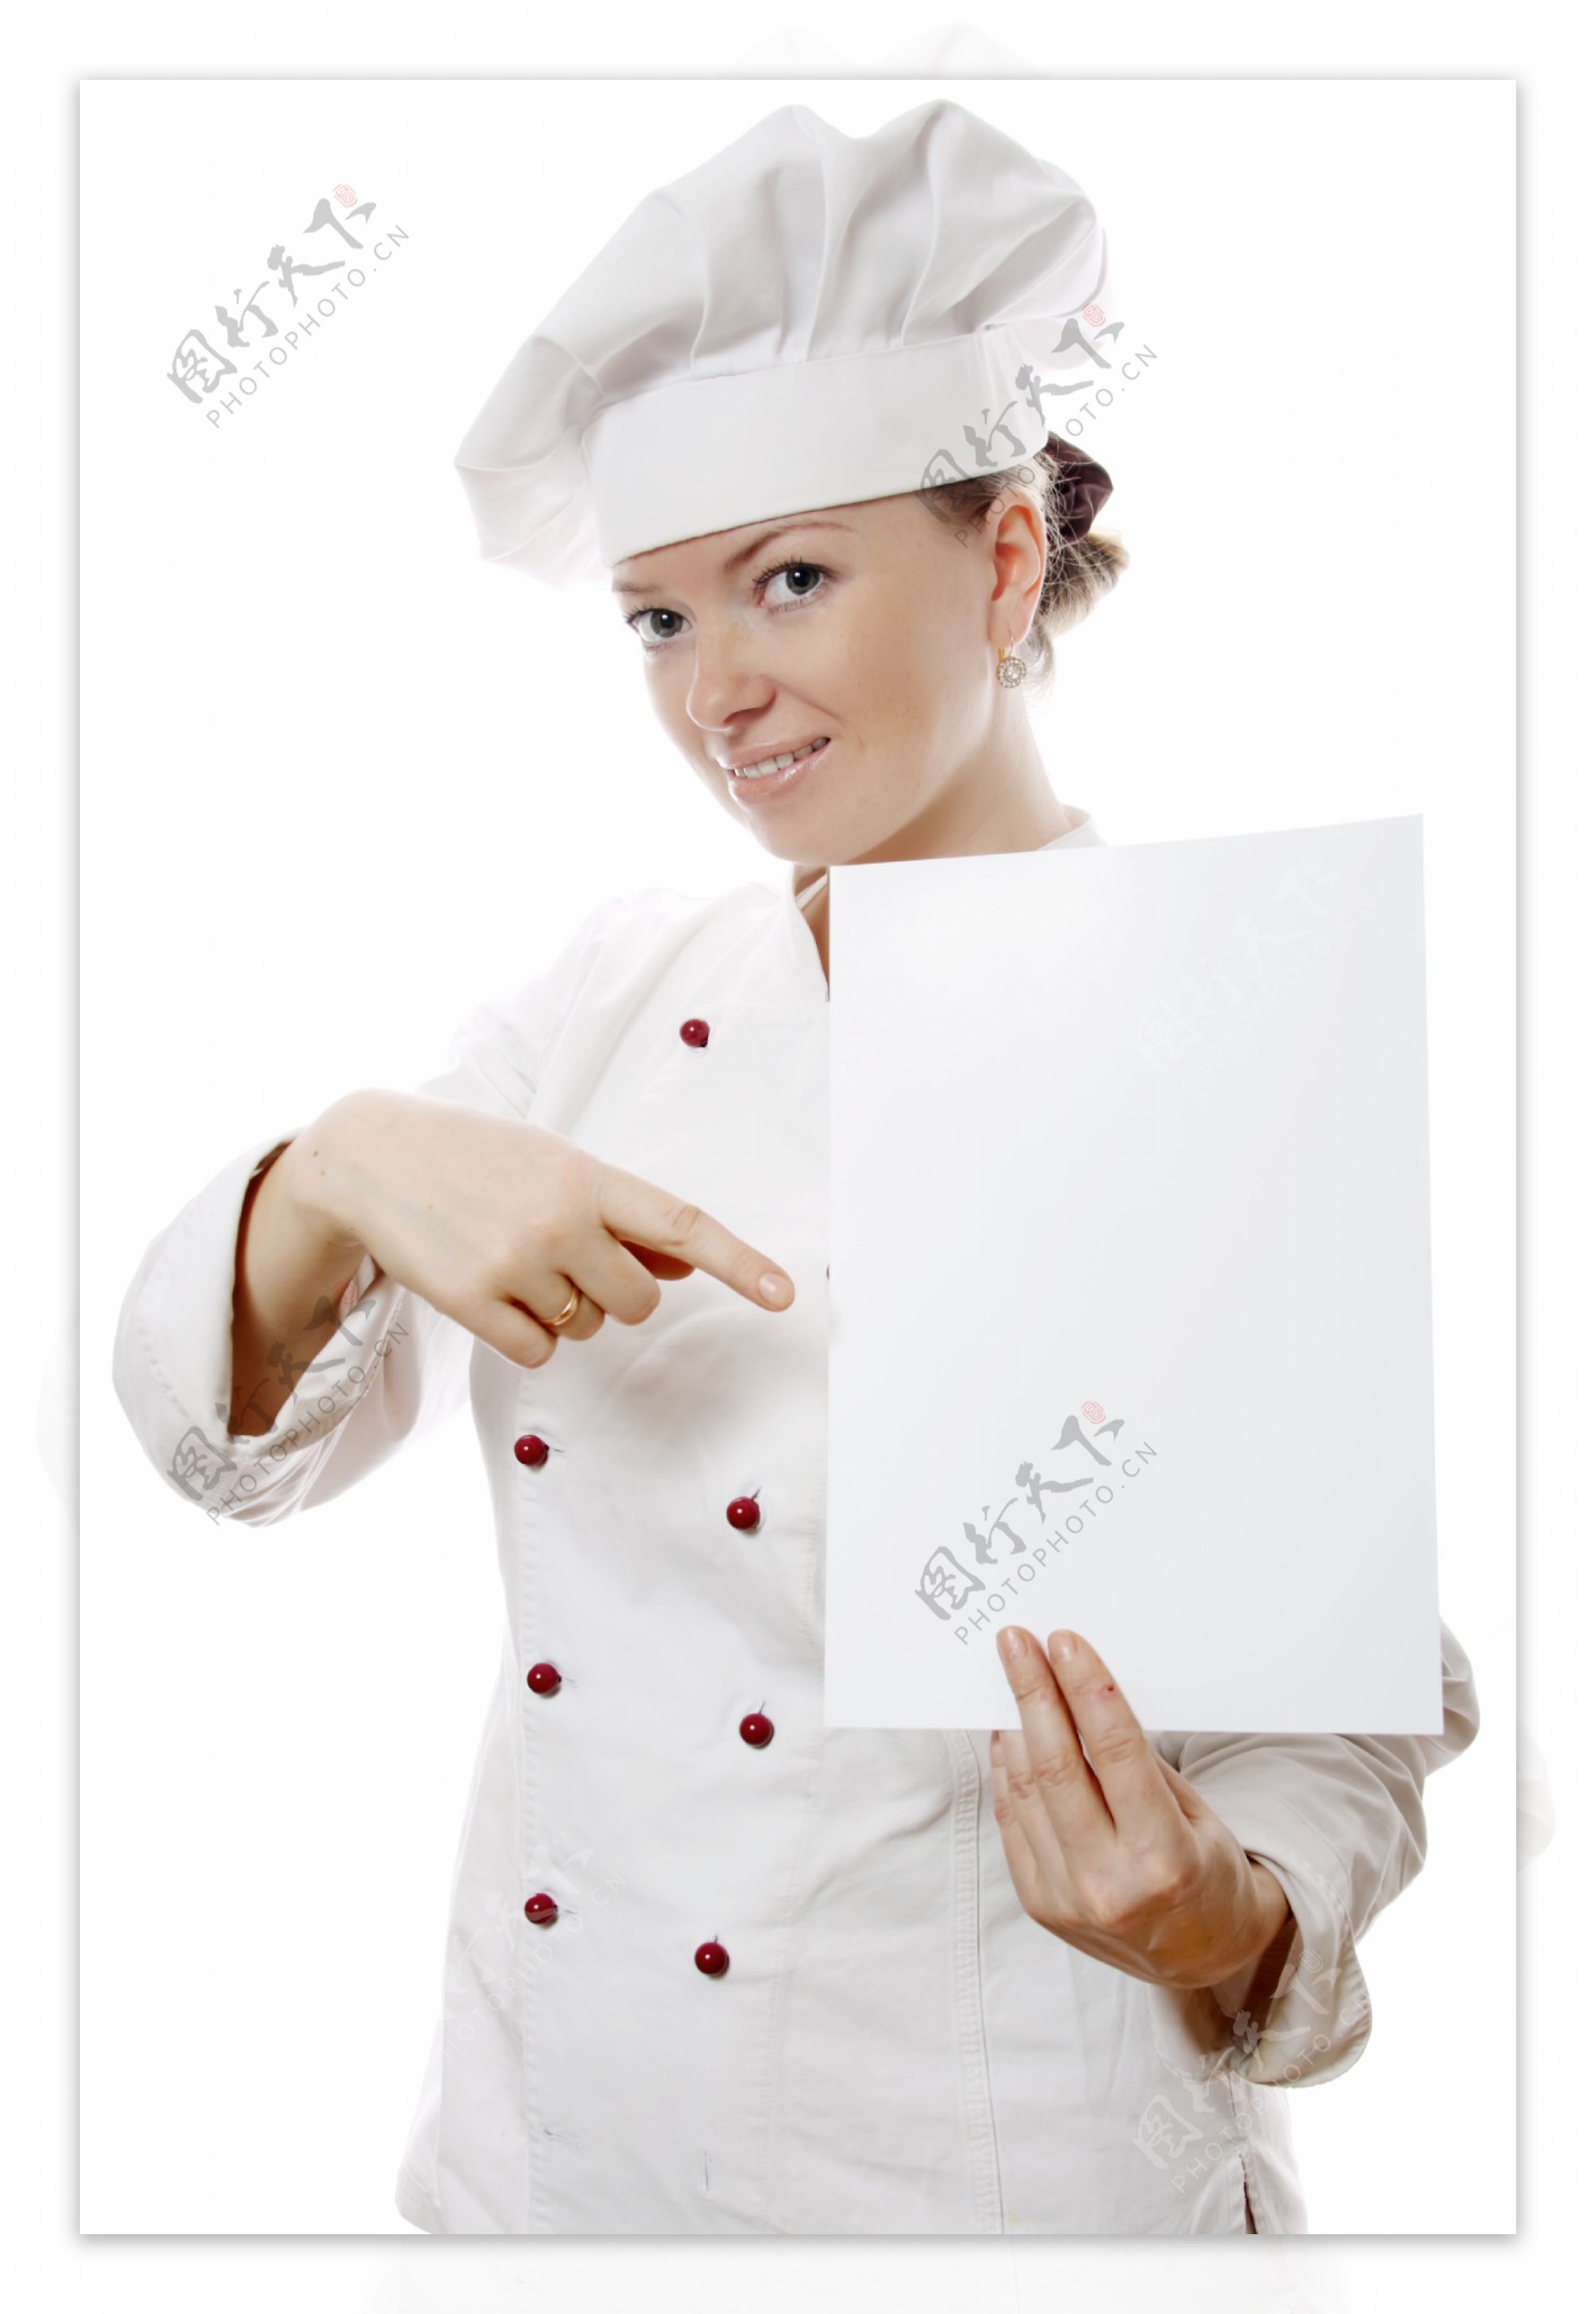 女厨师与空白广告牌图片